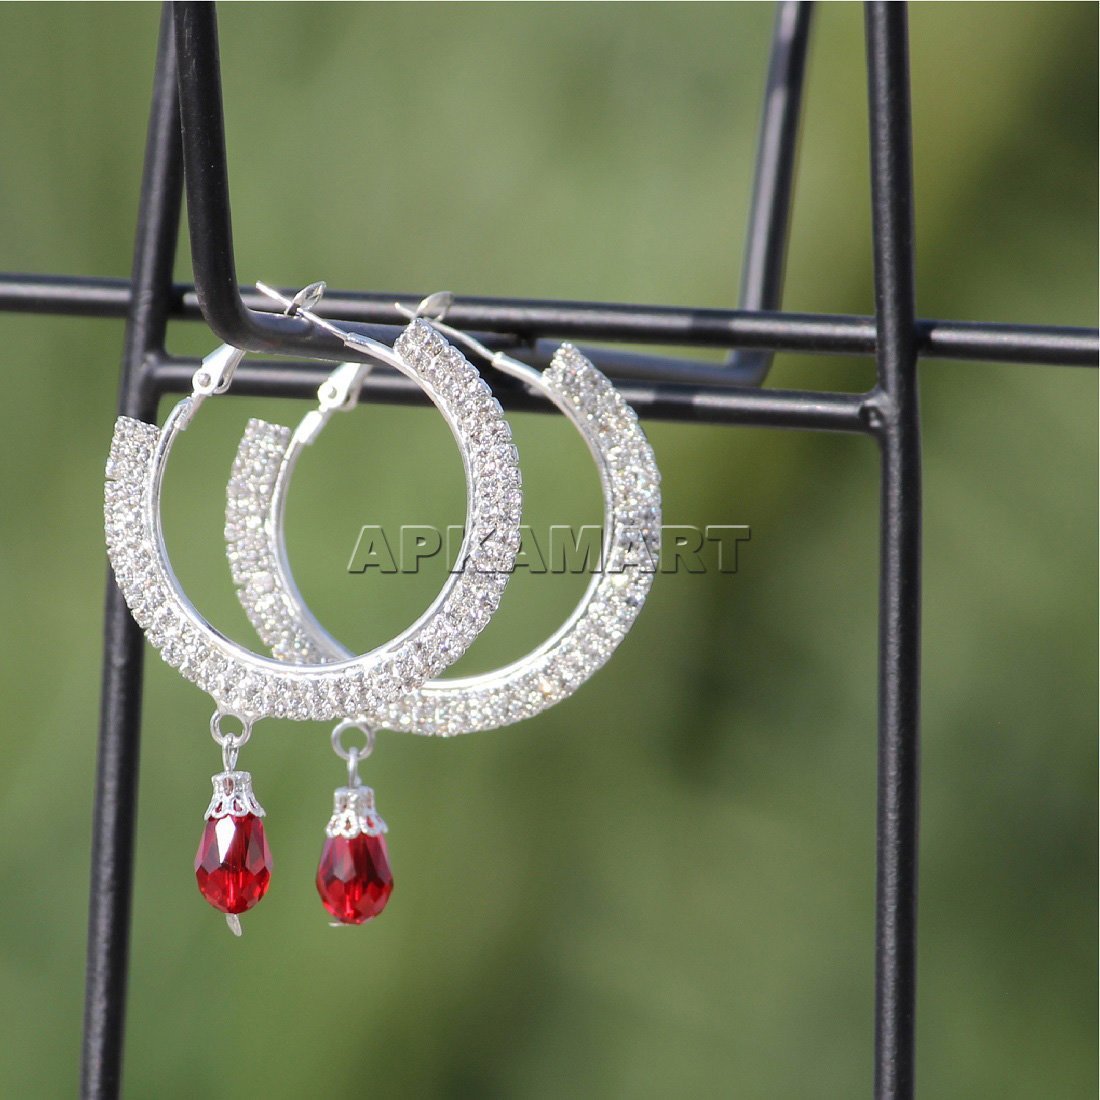 Earring Hoops - Stylish Crystal Earrings - For Women & Girls - ApkaMart